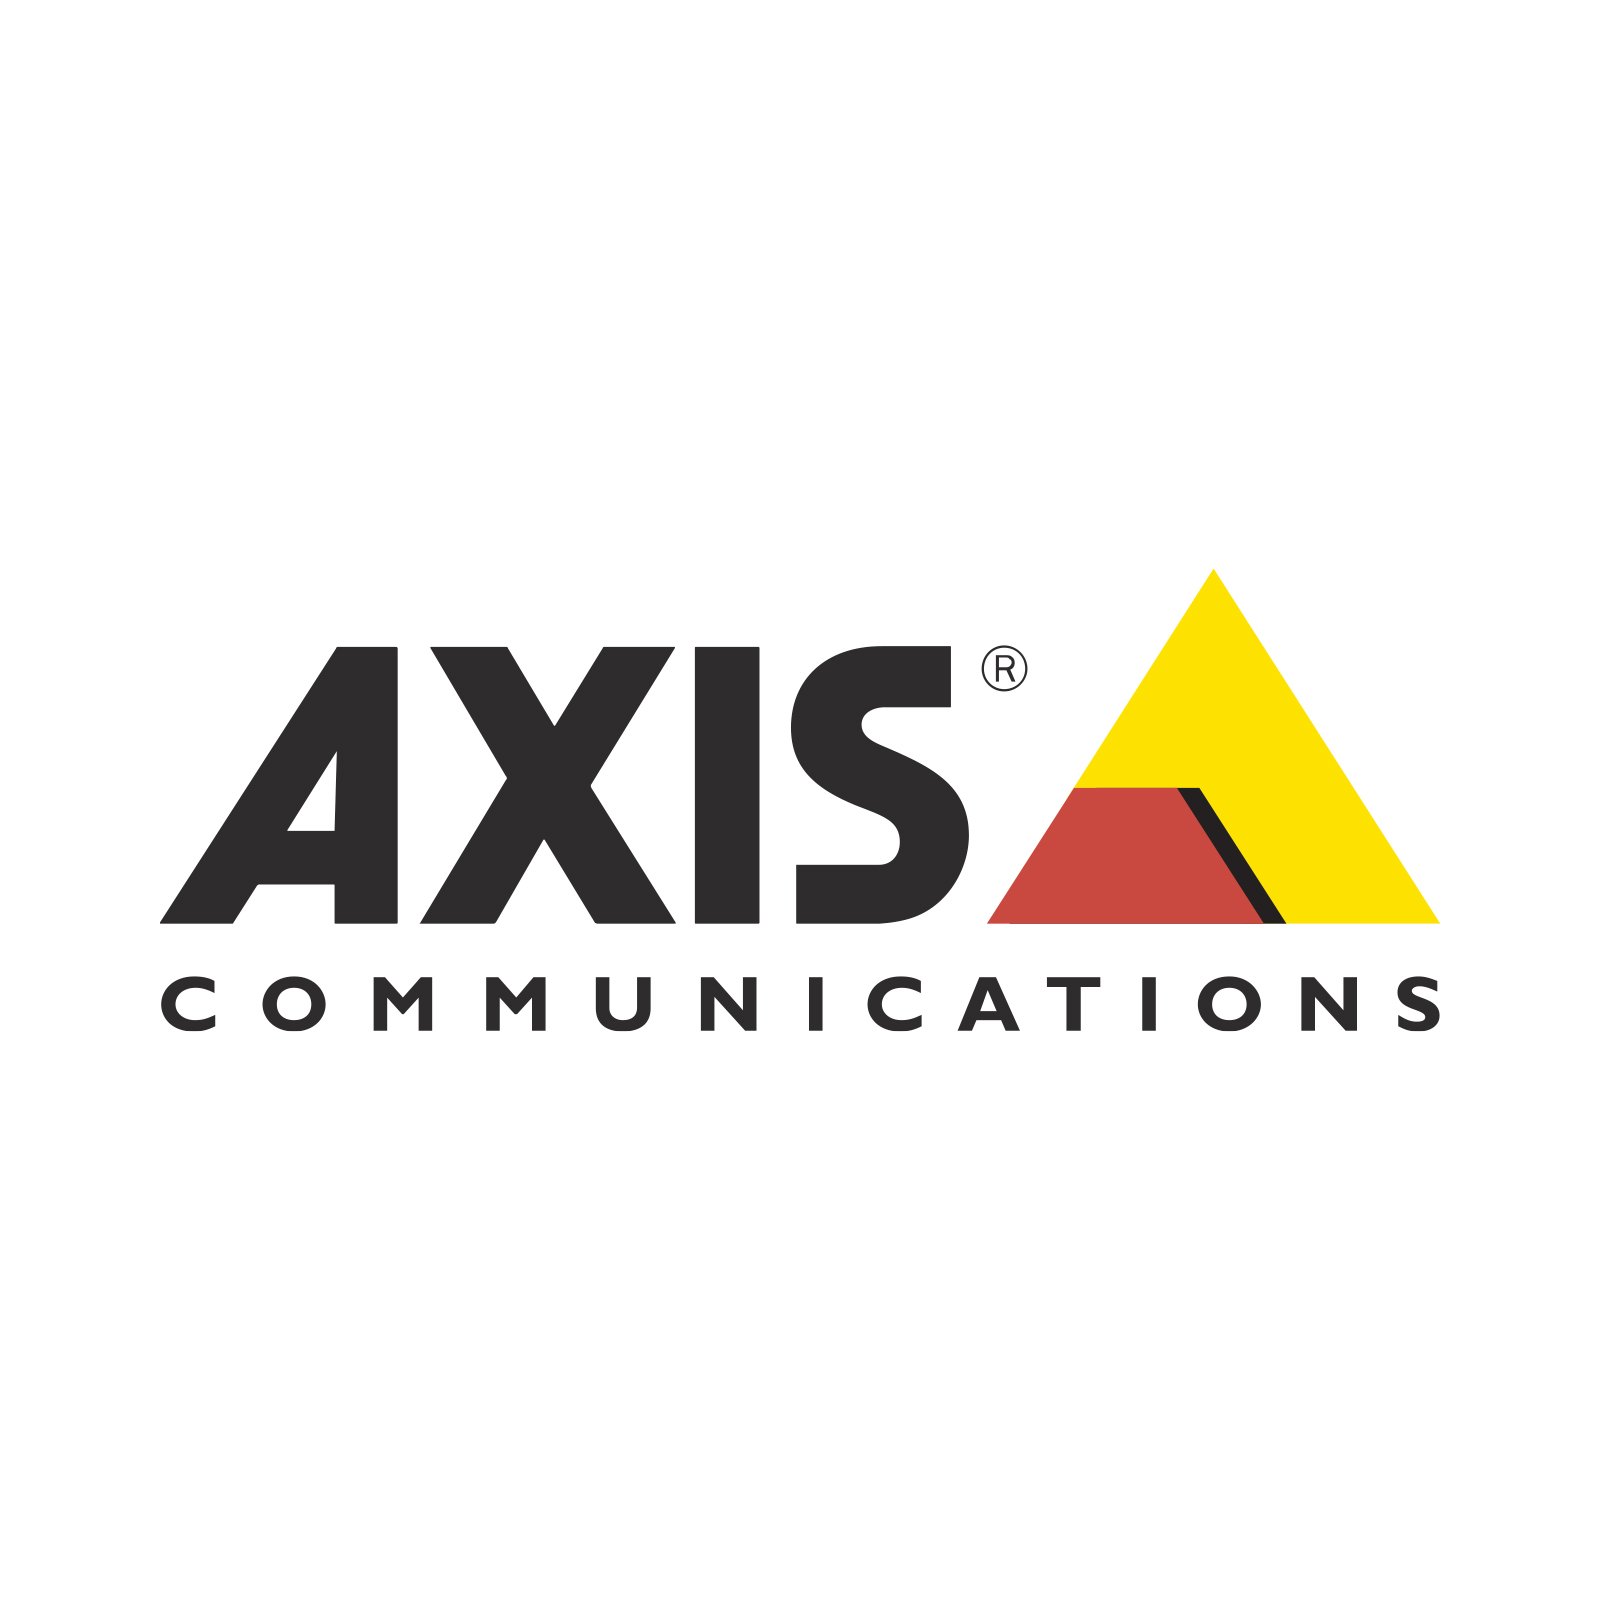 Axis.jpg